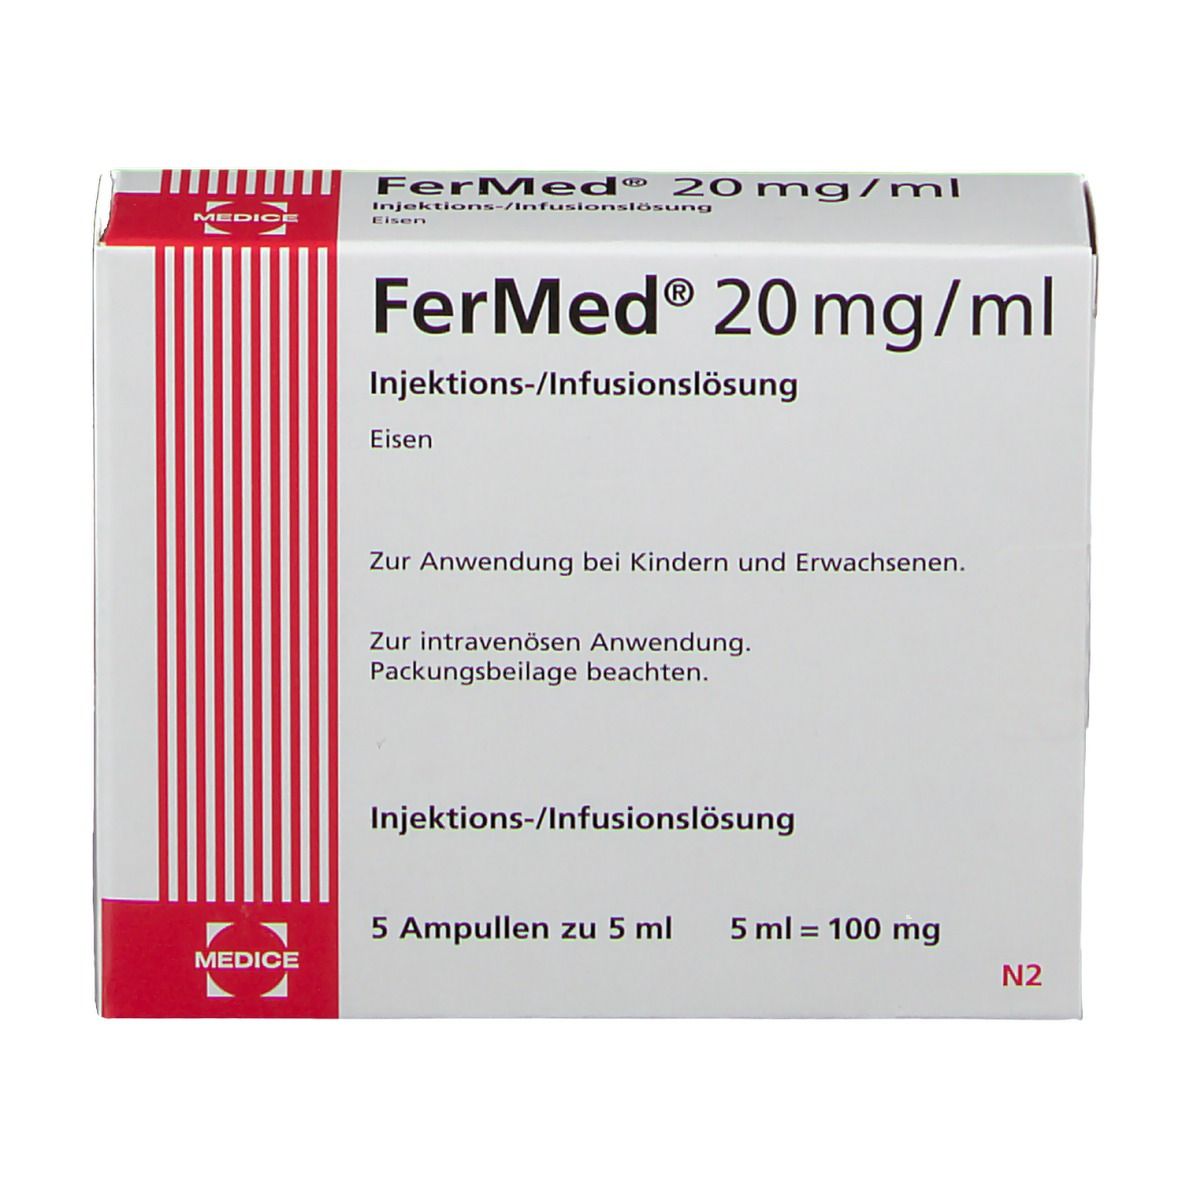 FerMed® 20 mg/ml